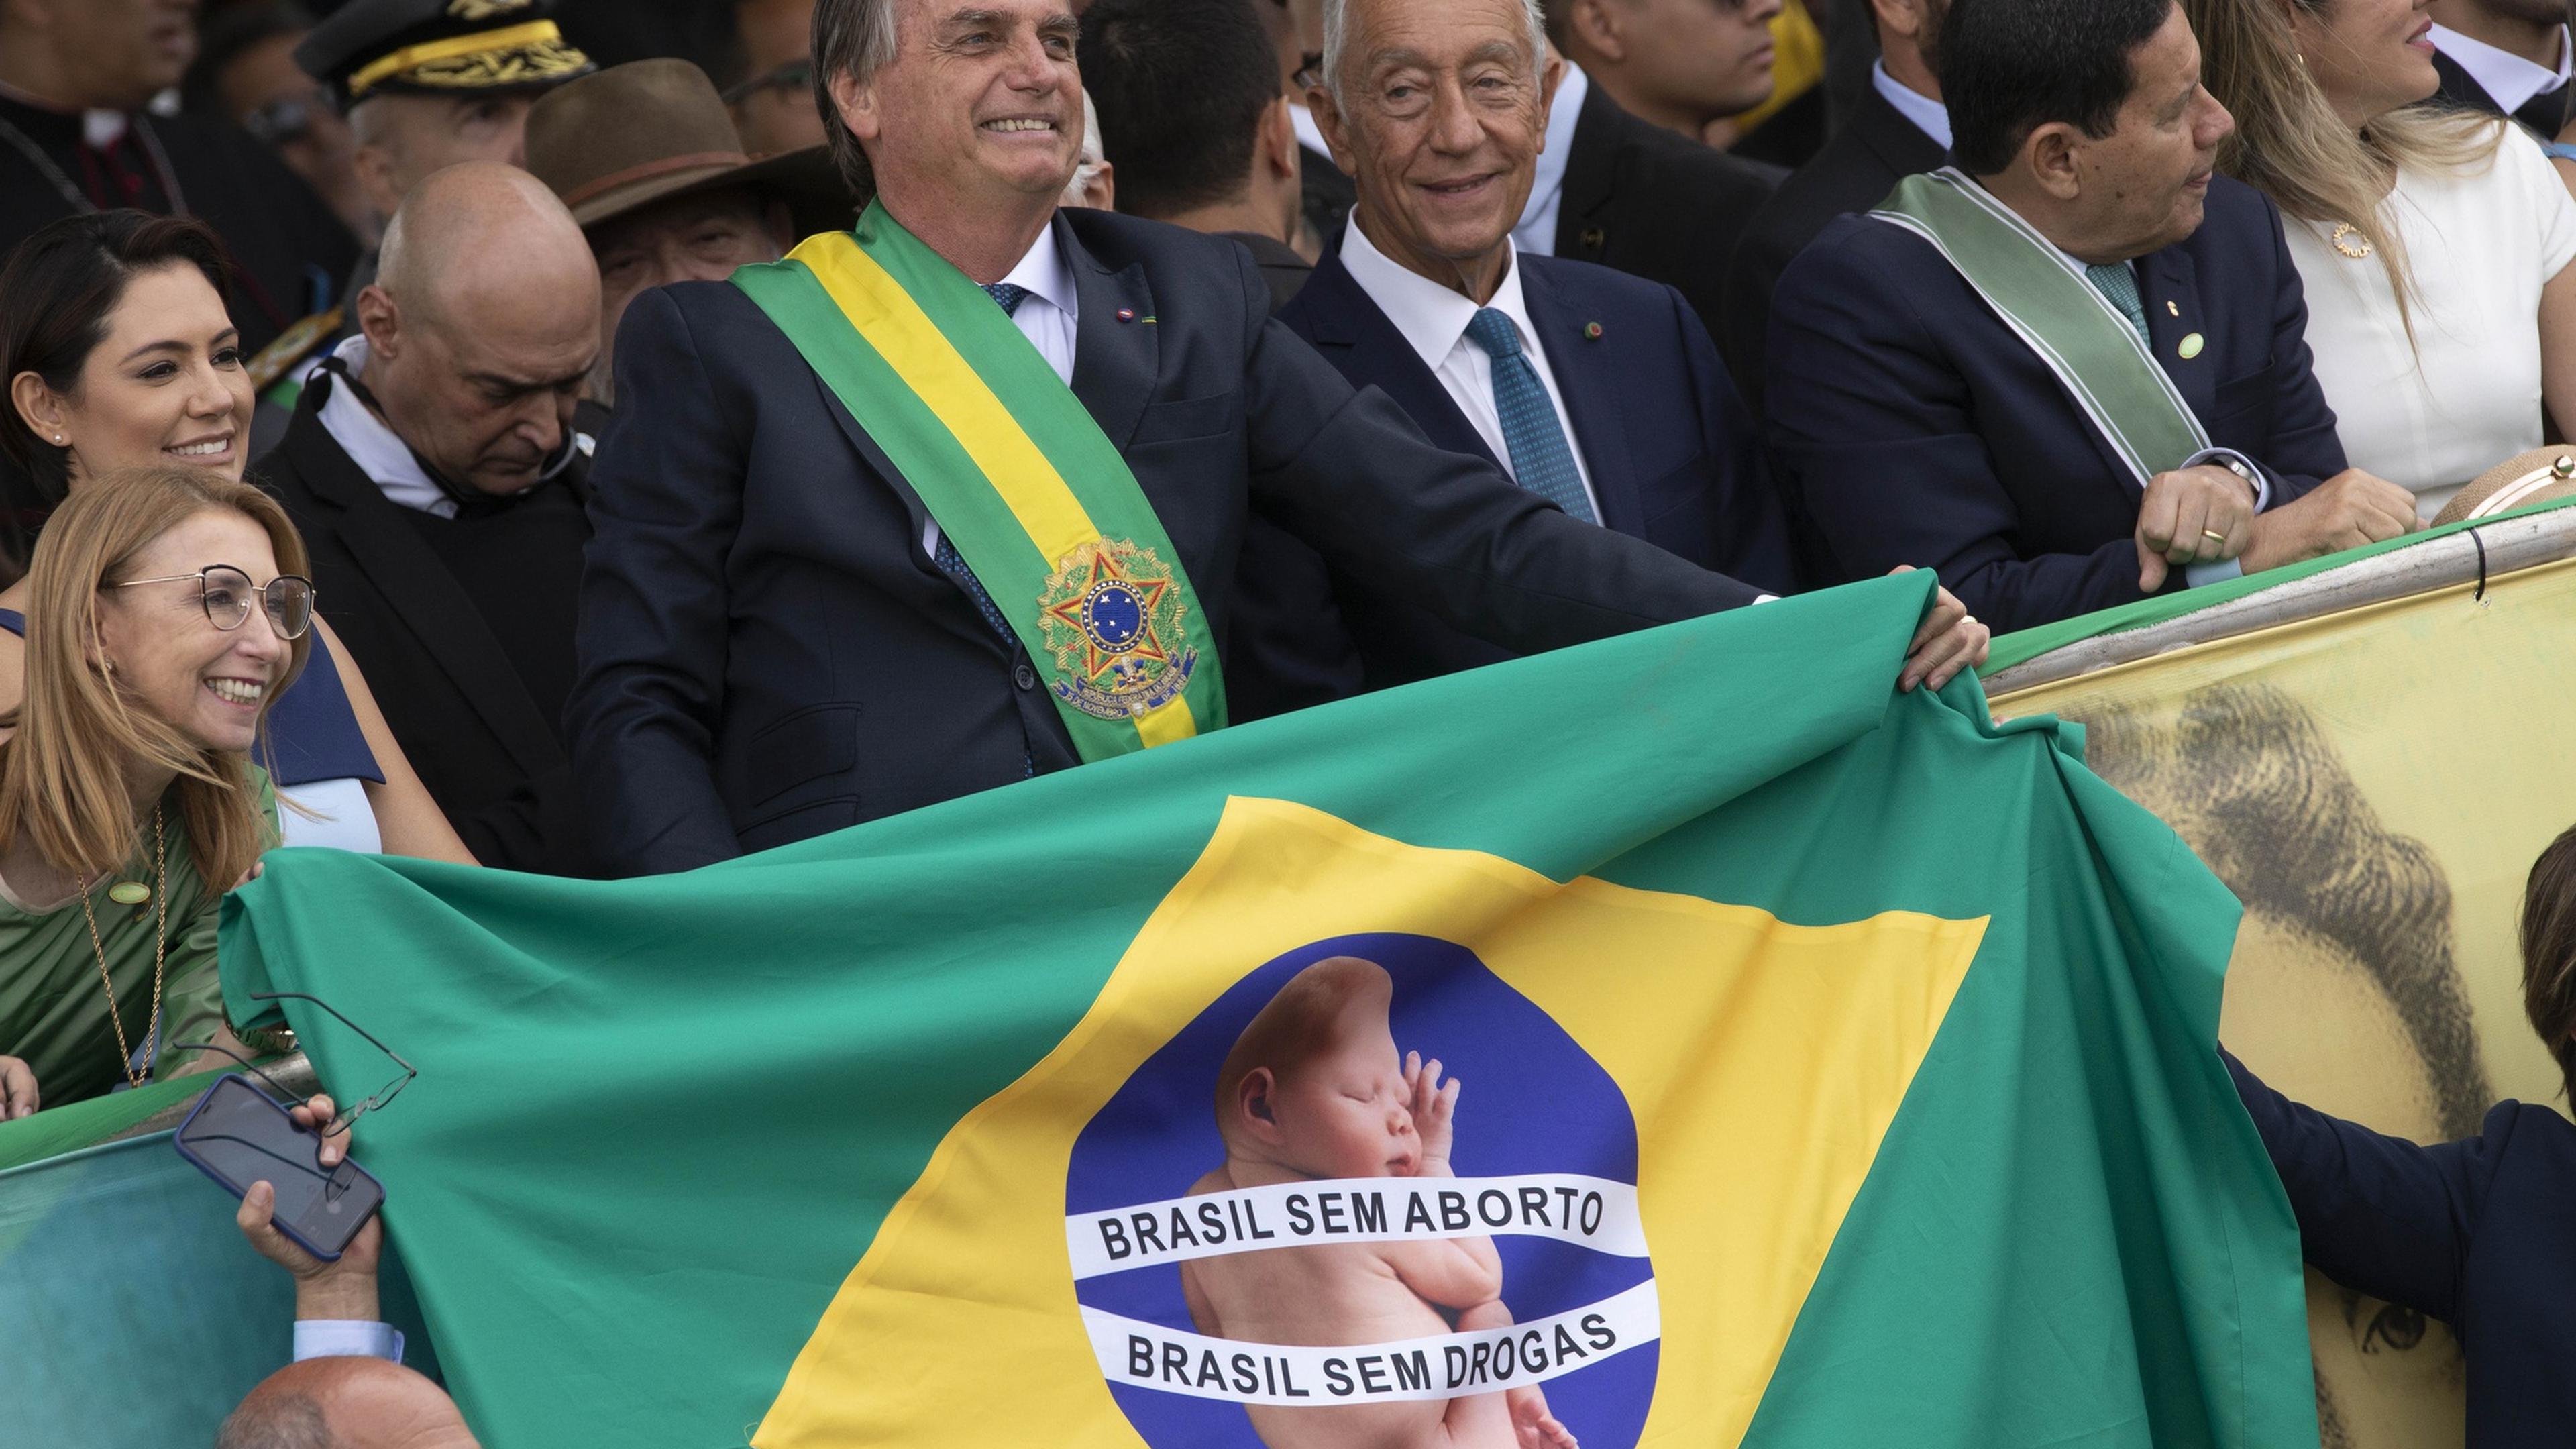 Brasil sem aborto, Brasil sem drogas. Bandeira de Bolsonaro não